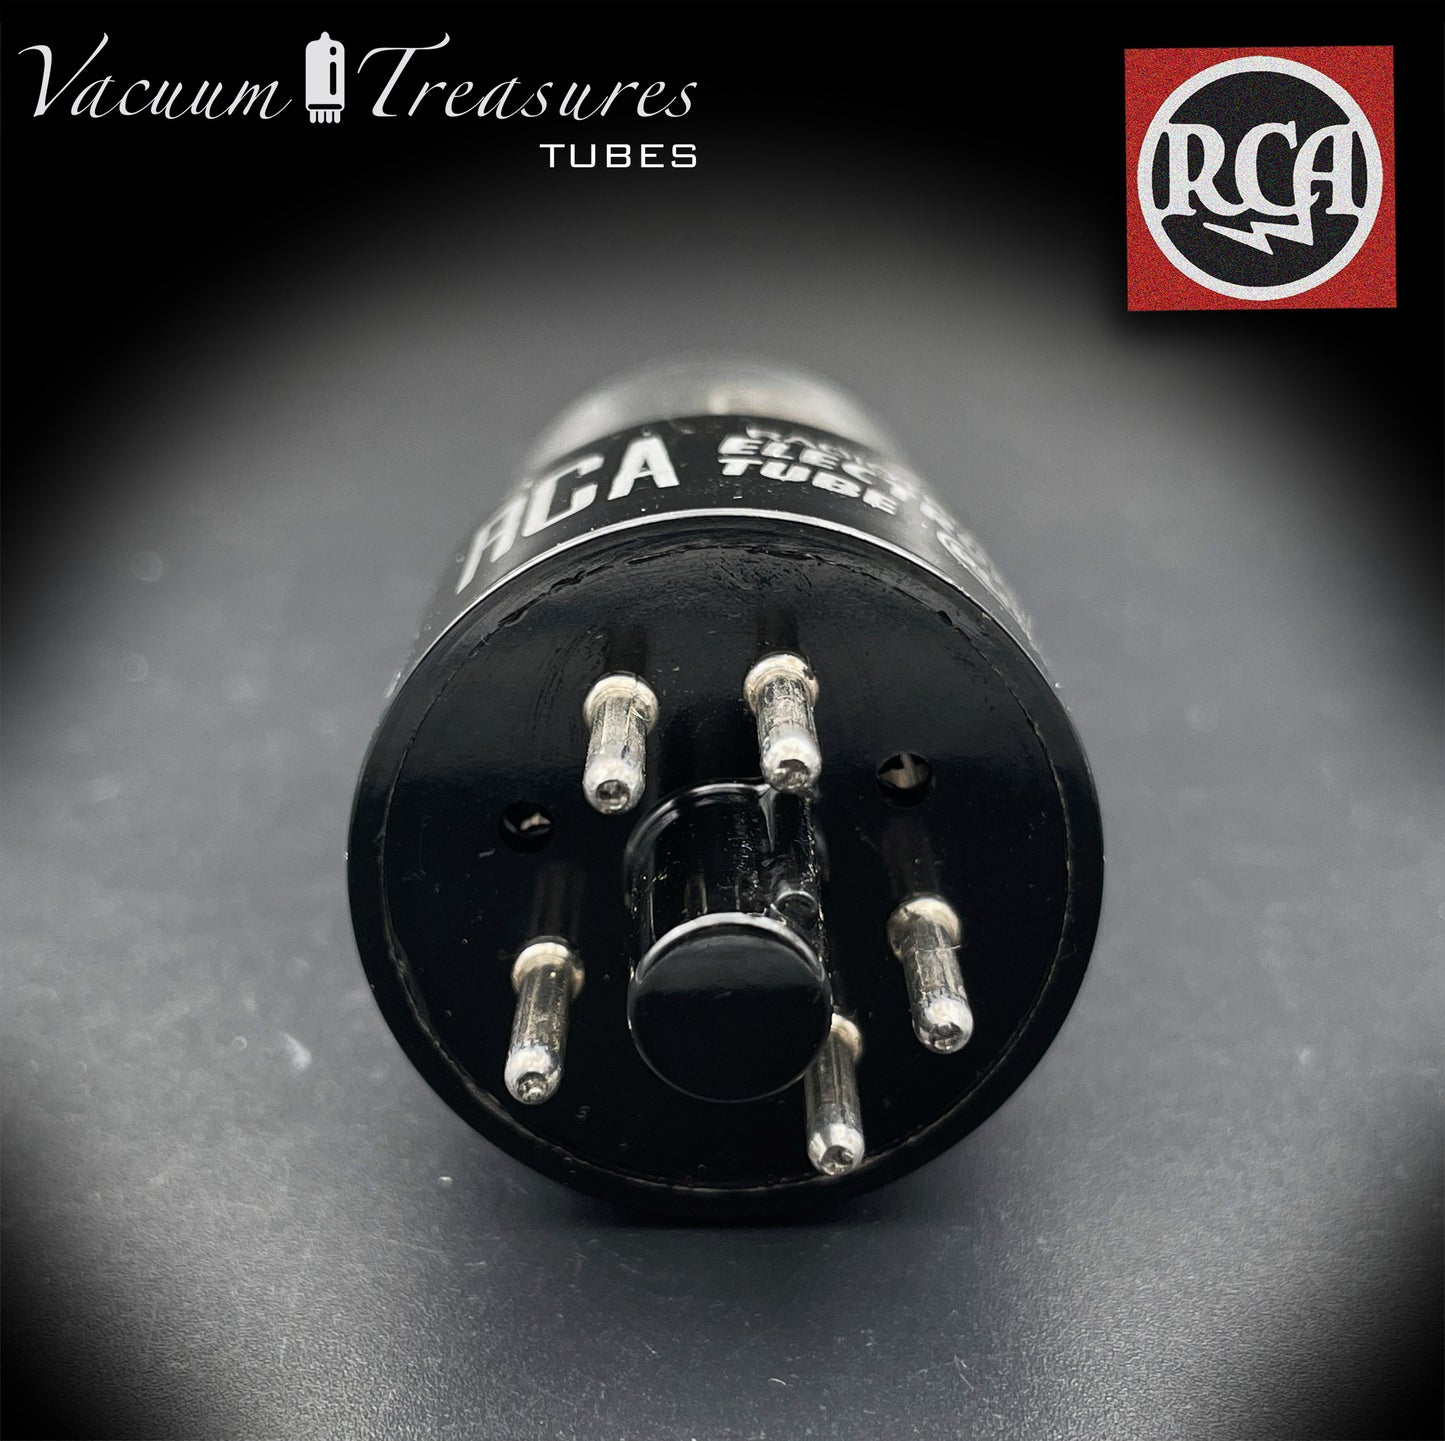 6X5 GT ( 6Z5P ) RCA NOS NIB plaques noires carré Getter redresseur Tube fabriqué aux états-unis